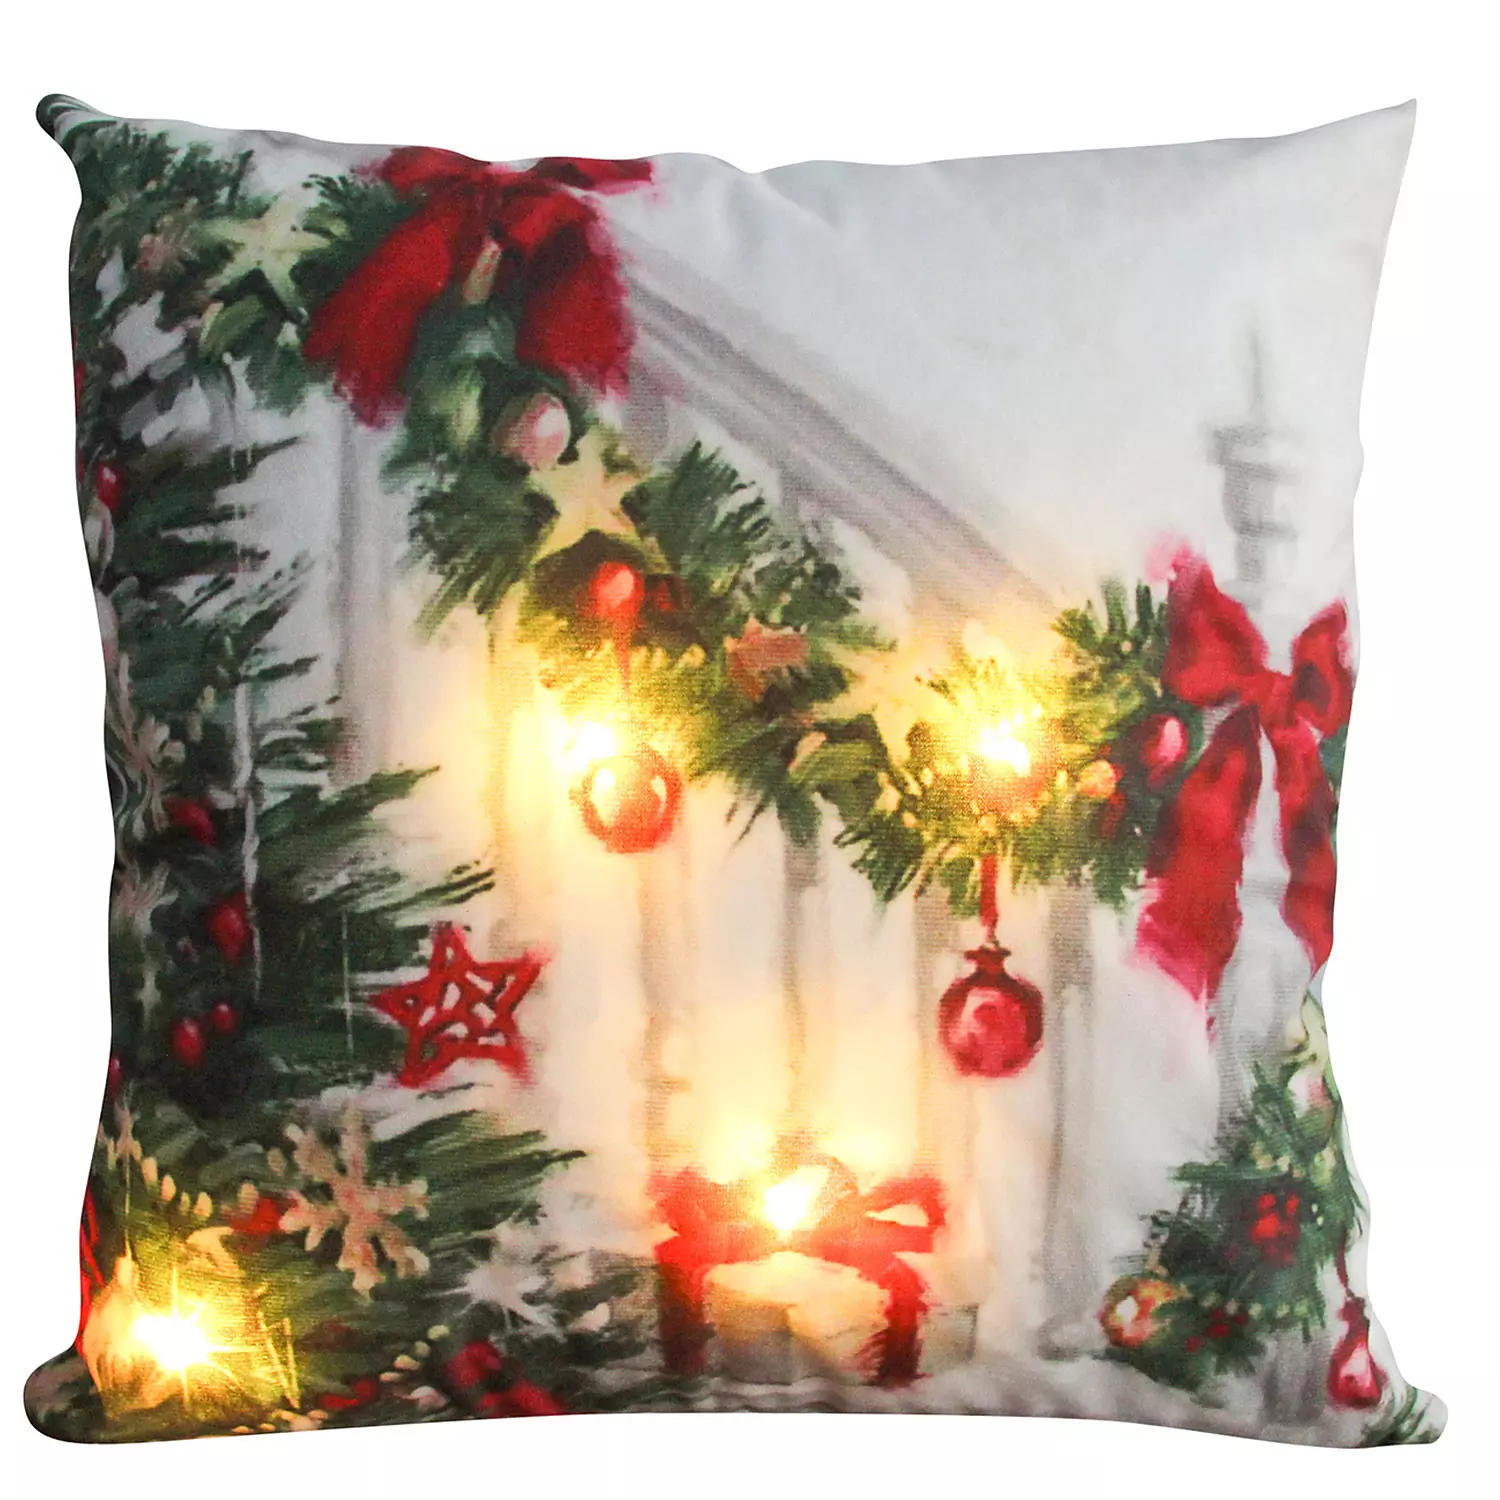 Light Up LED, photoreal printed Christmas cushion, Christmas garland, 17"x17"